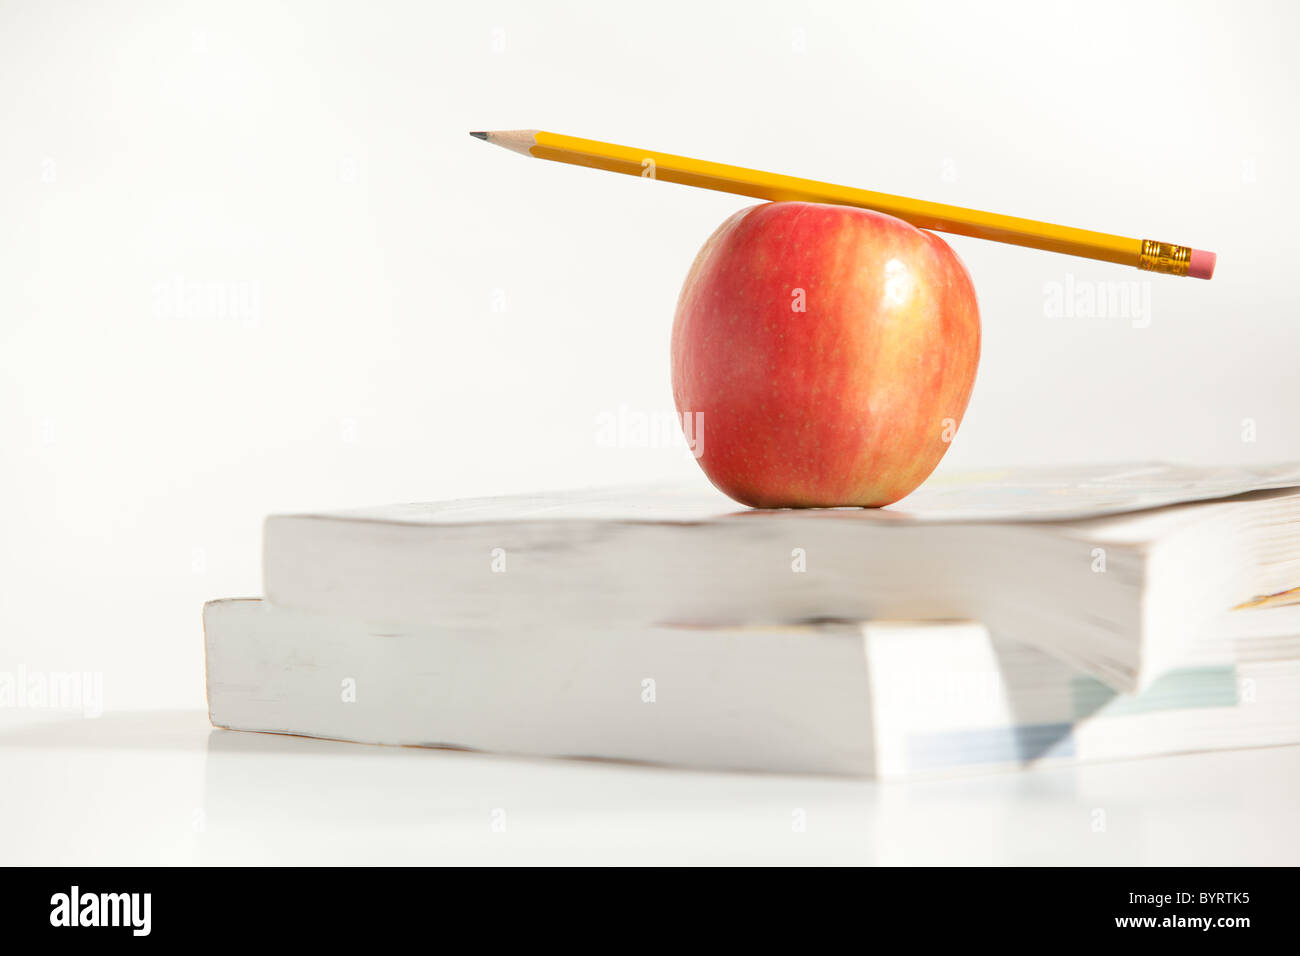 An Apple with a Pencil on a Teachers Desk Stock Photo